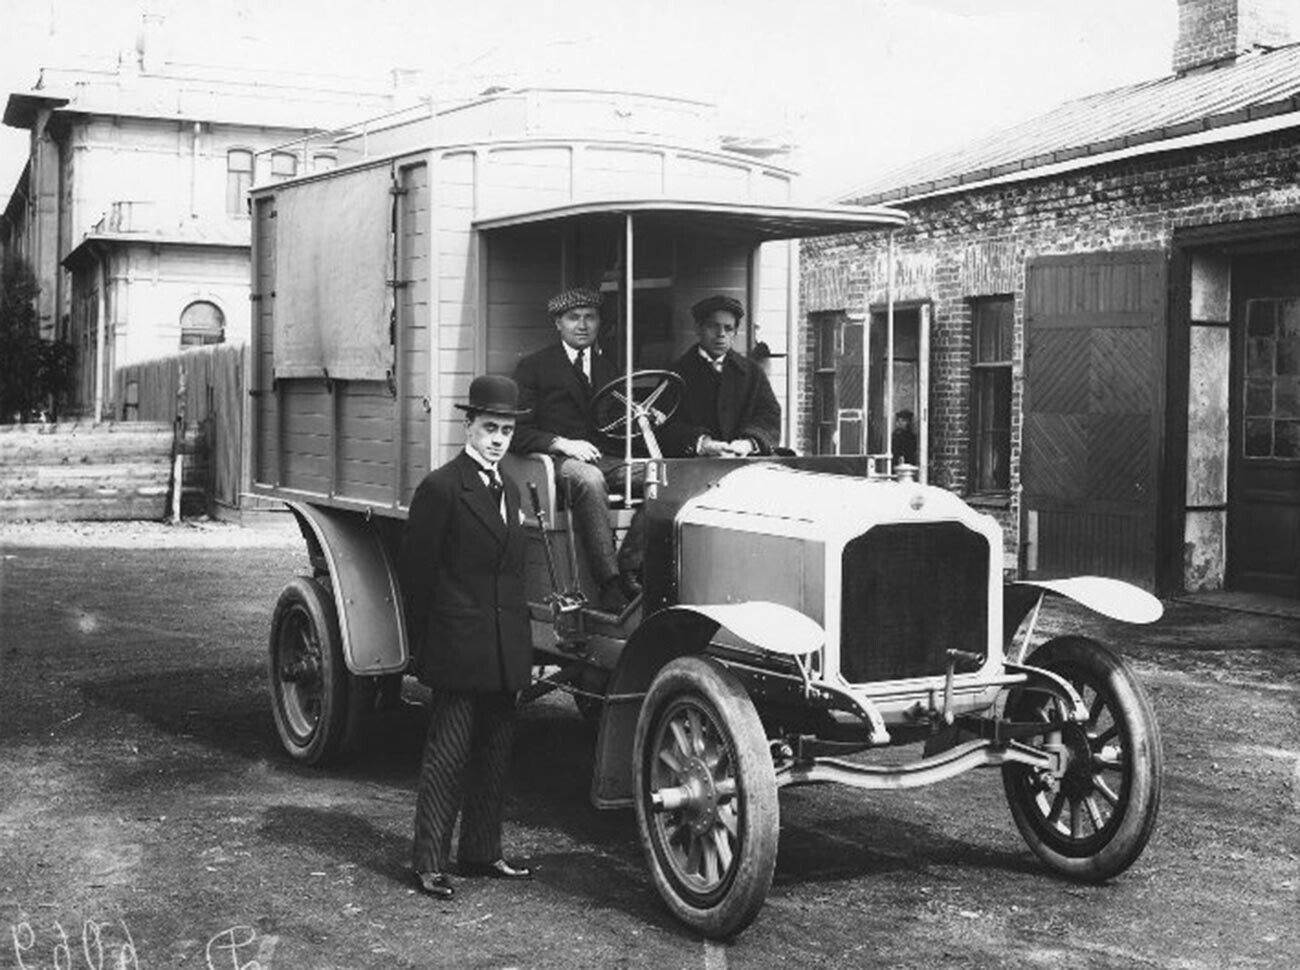 A military hospital car, 1911